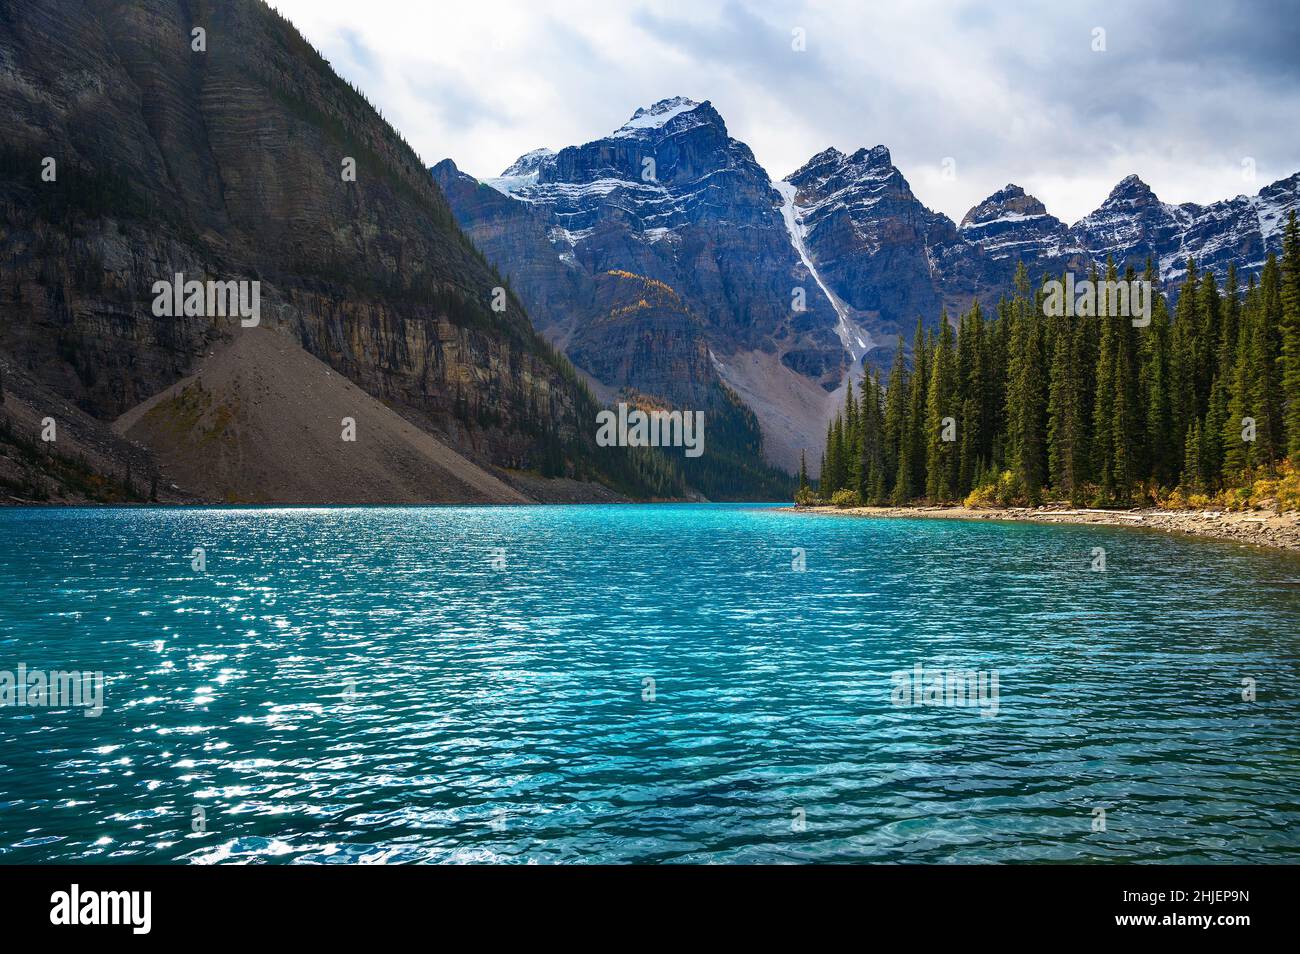 Le lac Moraine, dans le parc national Banff, Alberta, Canada Banque D'Images